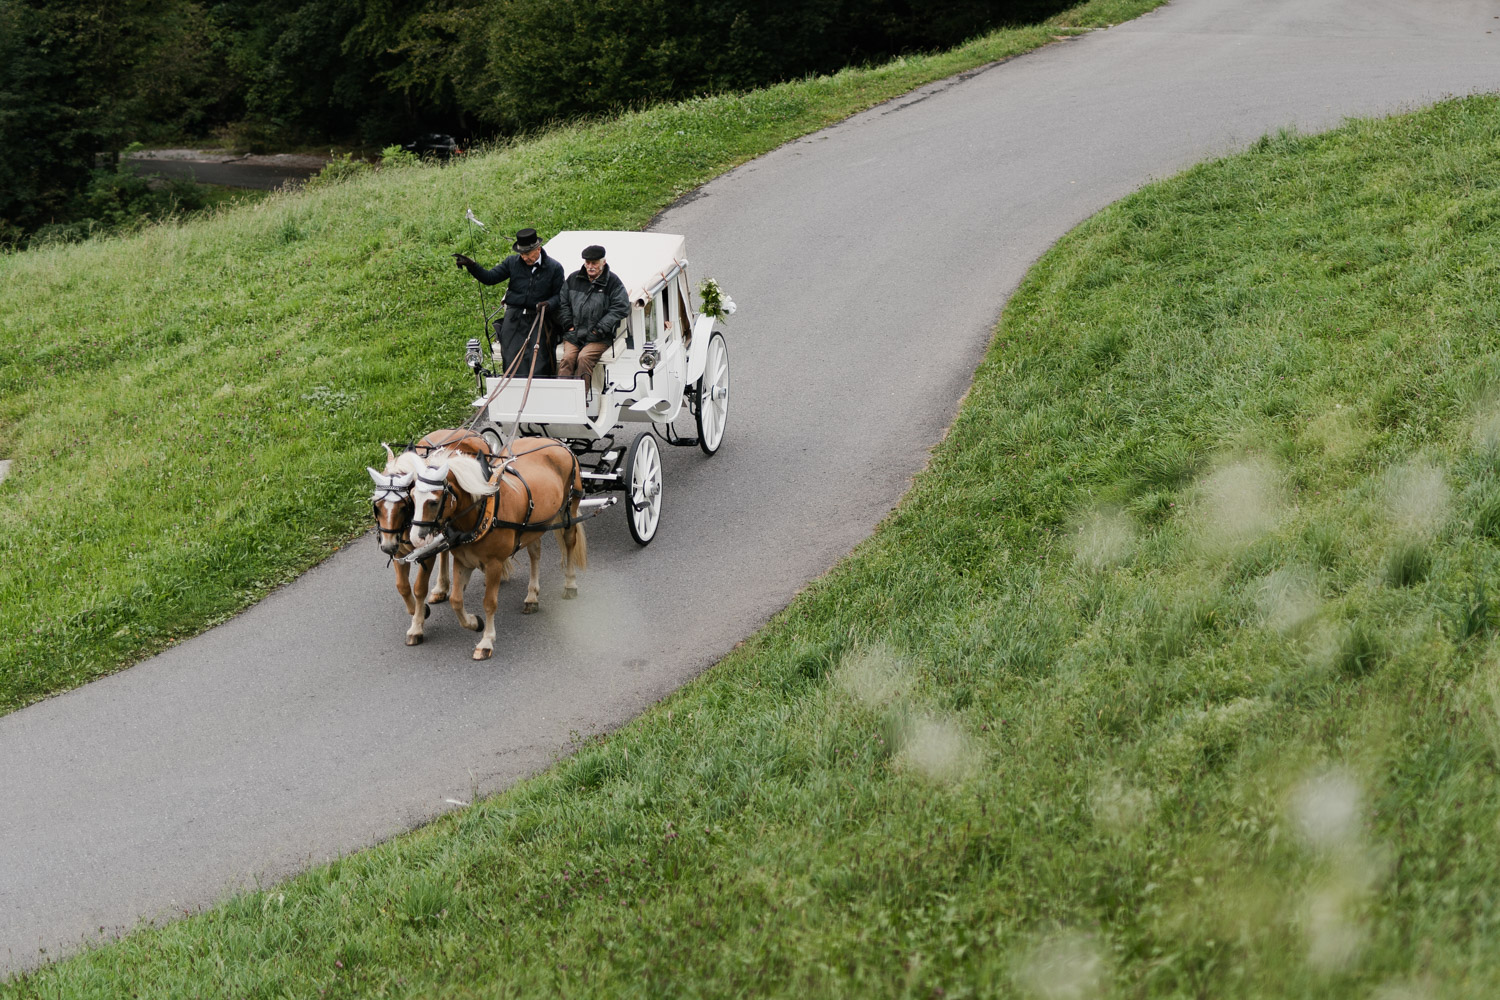 Horse carriage at Villa Honegg for a wedding